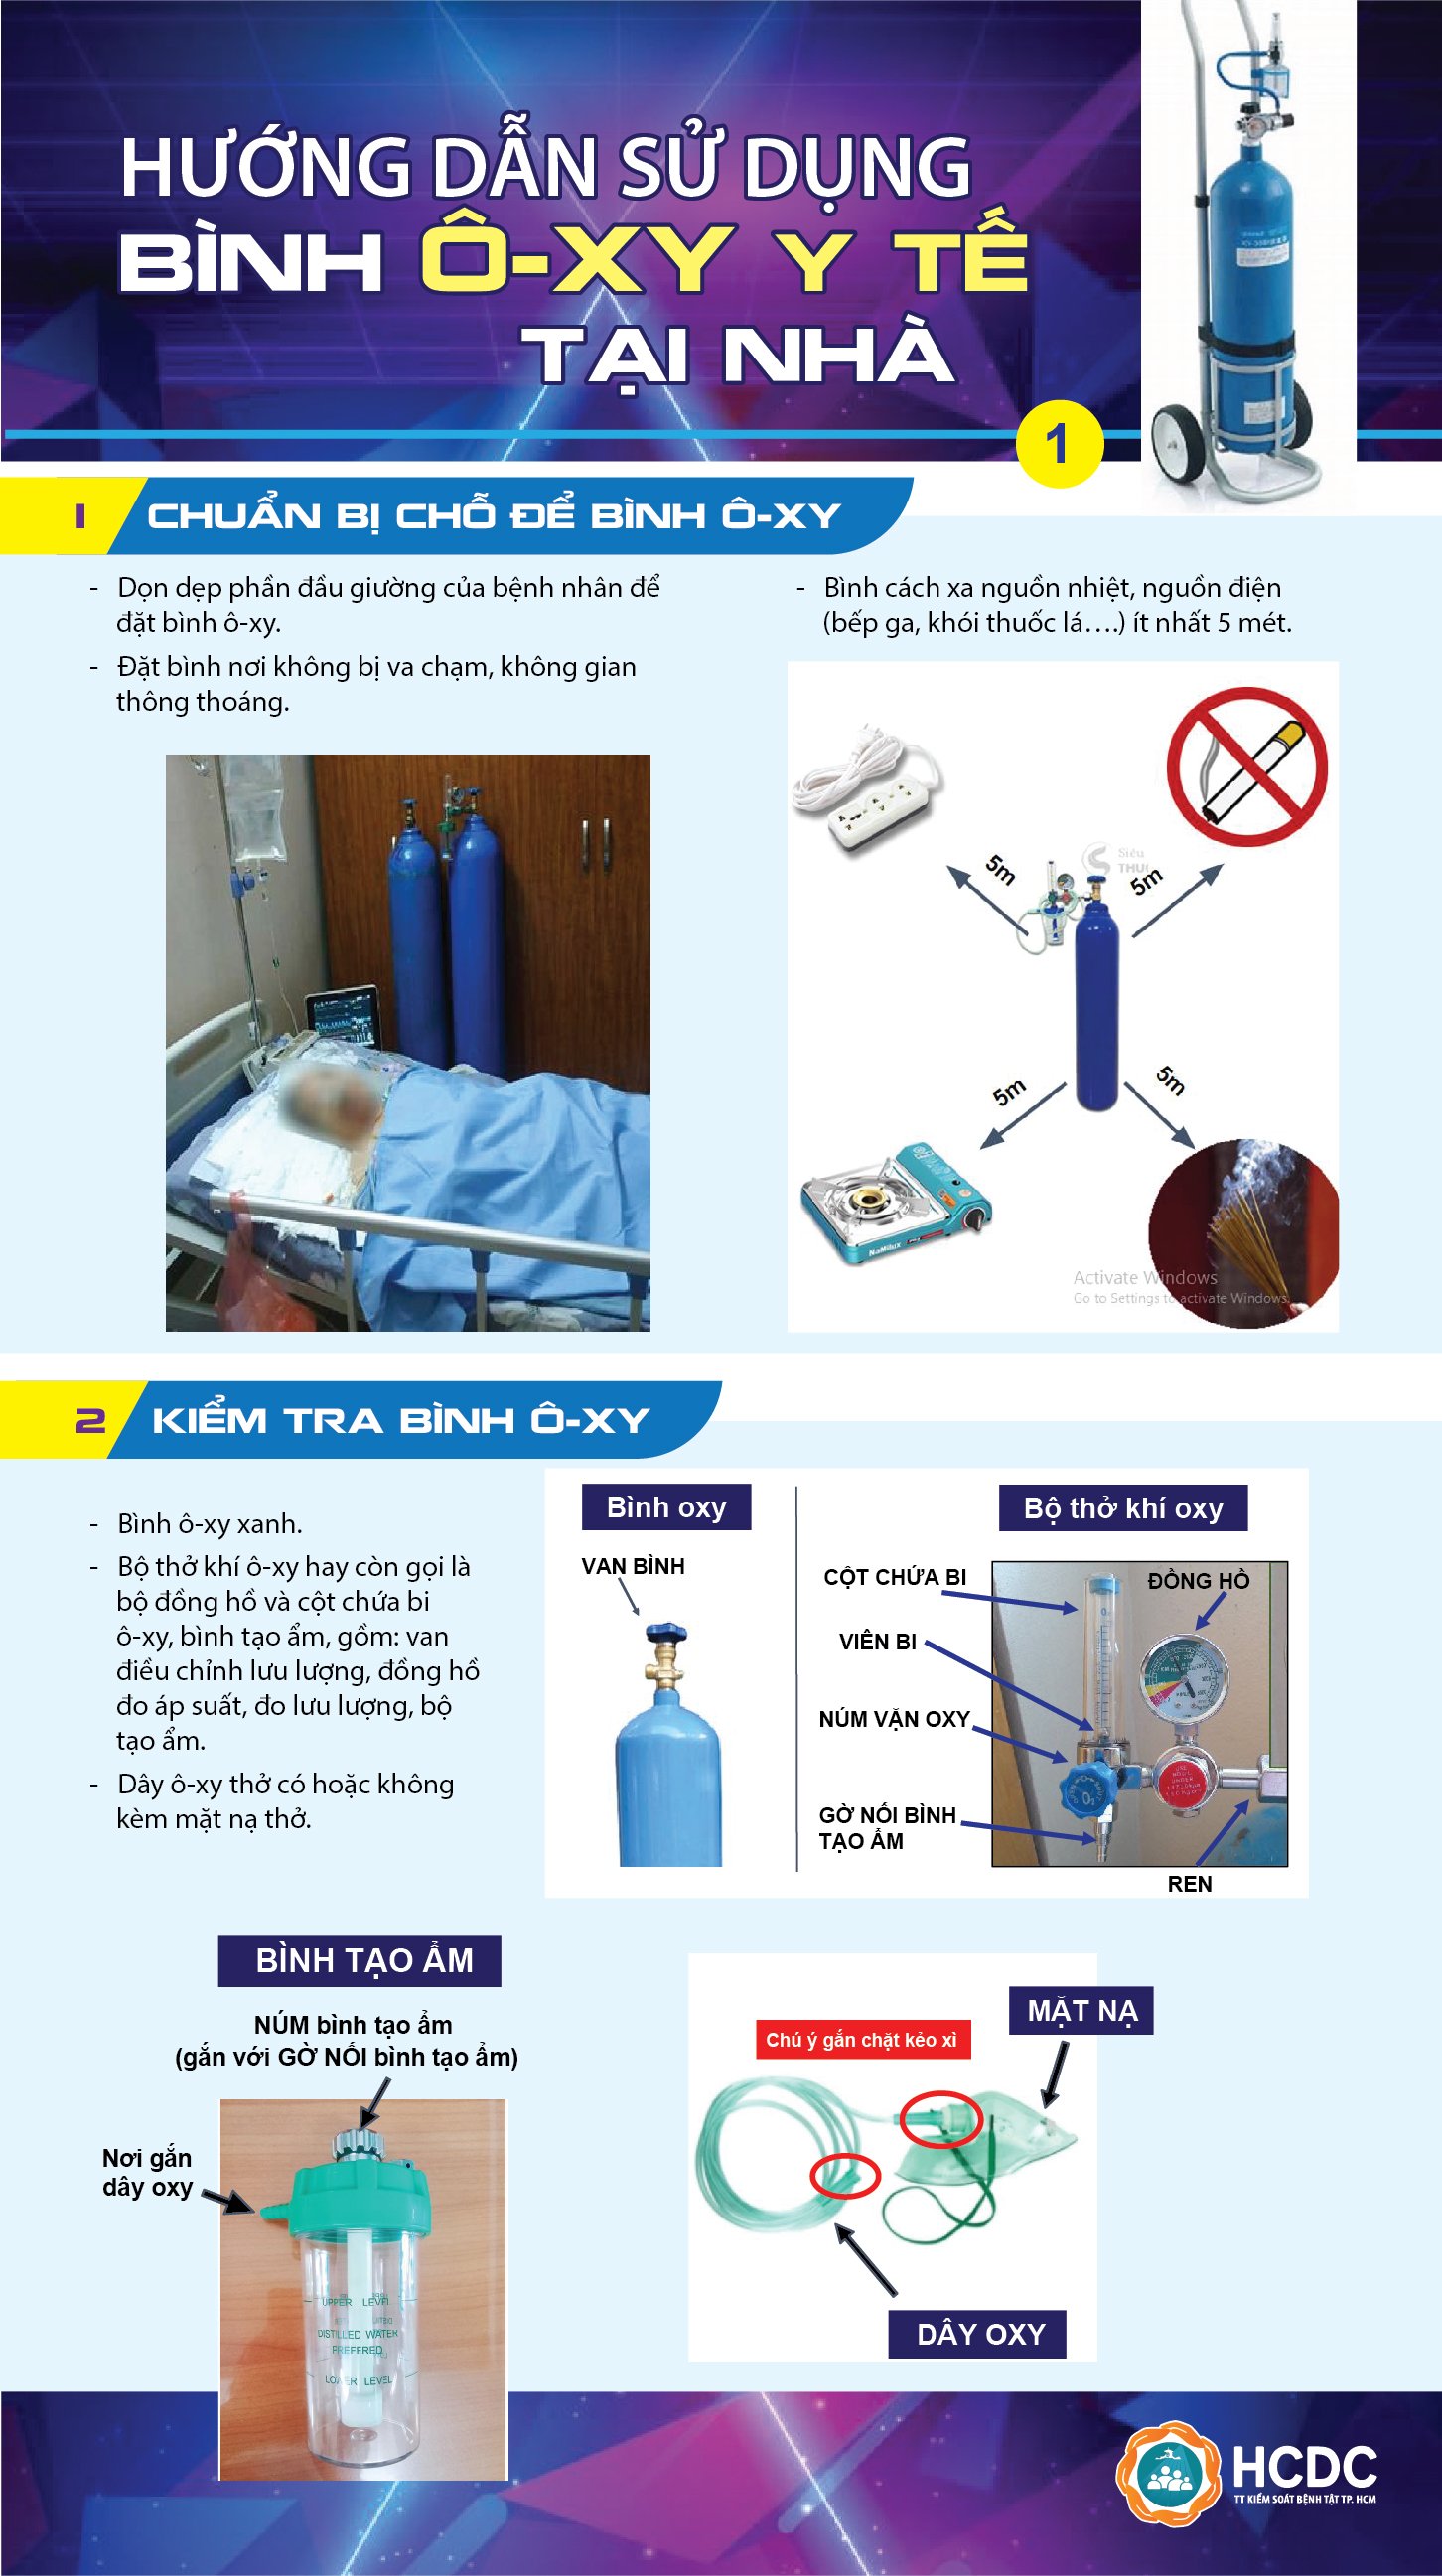 Hướng dẫn về việc sử dụng bình Ô-xy y tế cho F0 đang điều trị tại nhà (theo HCDC)